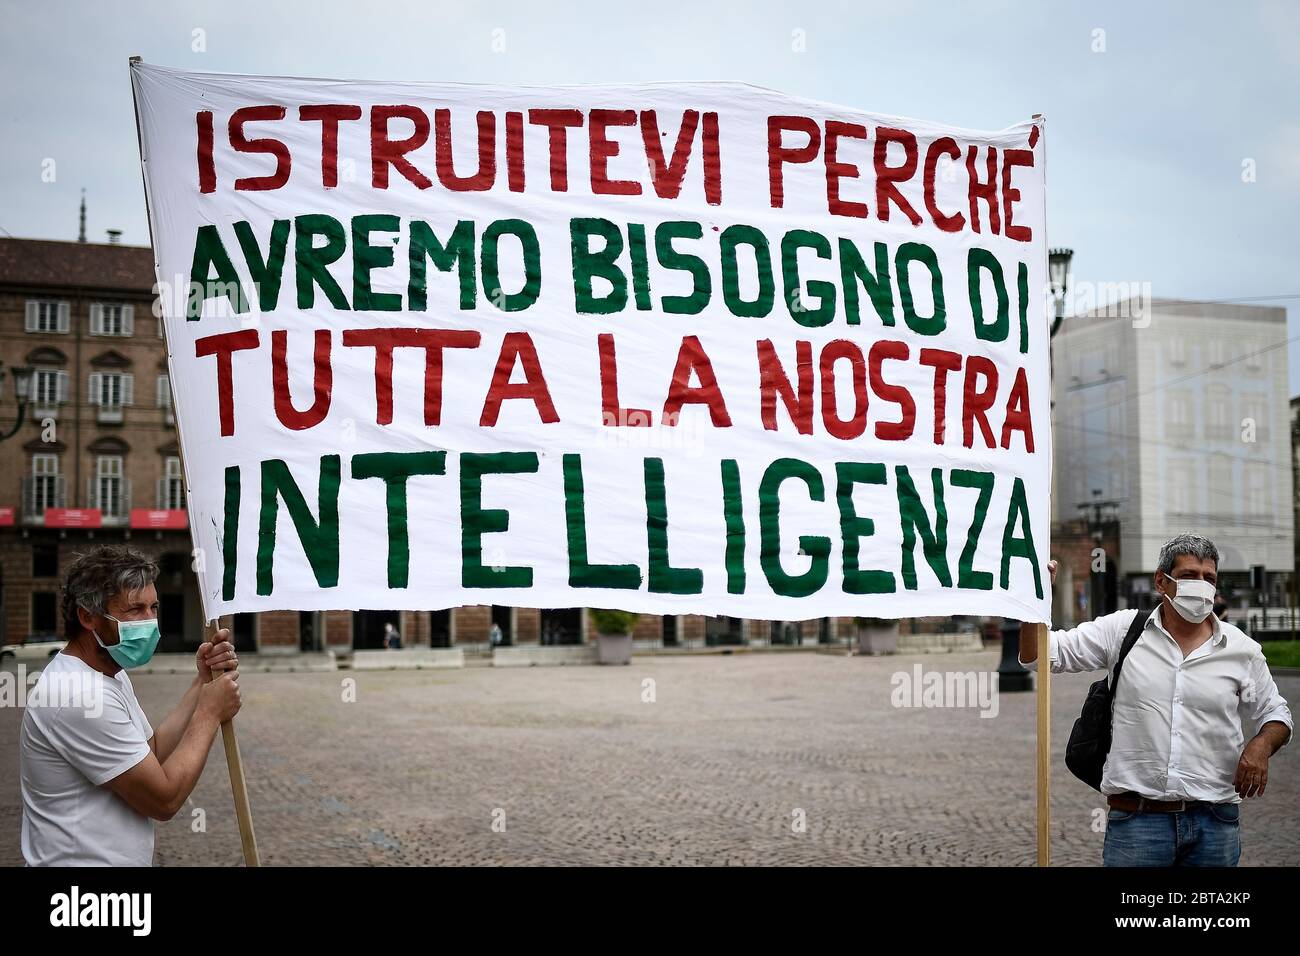 Turin, Italien - 23. Mai 2020: Zwei Personen halten ein Transparent mit der Aufschrift "erzieht euch, weil wir alle unsere Intelligenz brauchen" (ein Zitat von Antonio Gramsci) während einer Demonstration, um die Wiedereröffnung der Schulen im September zu fordern. Quelle: Nicolò Campo/Alamy Live News Stockfoto